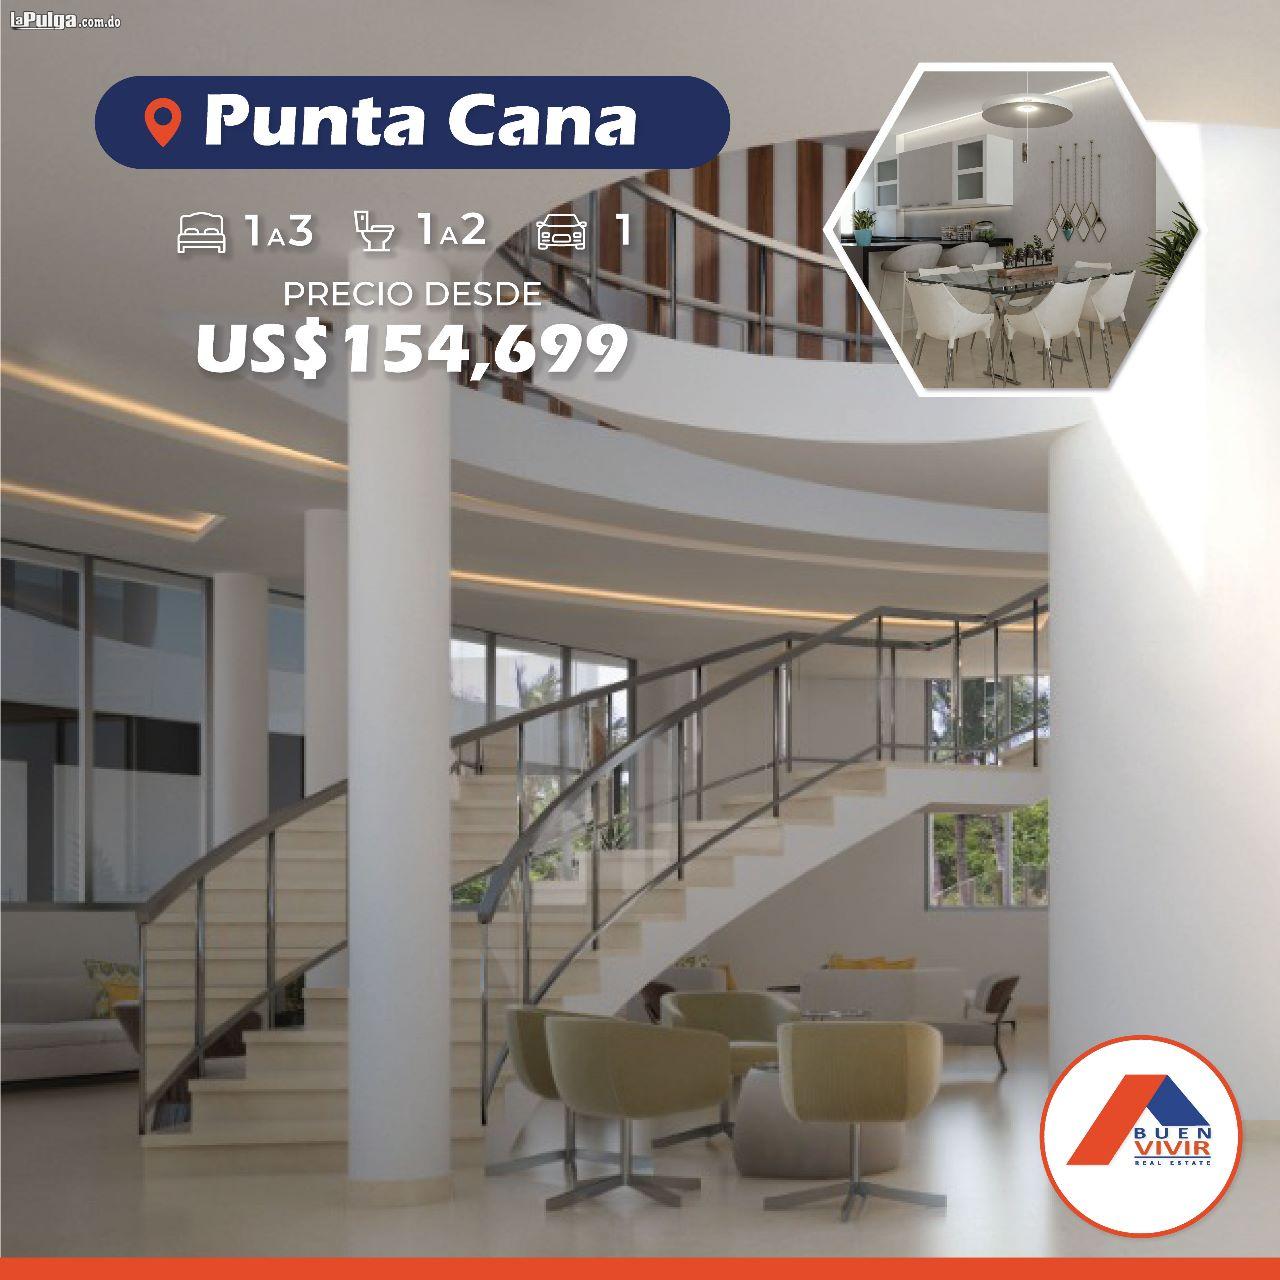 Apartamento en sector Punta Cana - Punta Cana 1 habitaciones 1 parqueo Foto 7133065-4.jpg